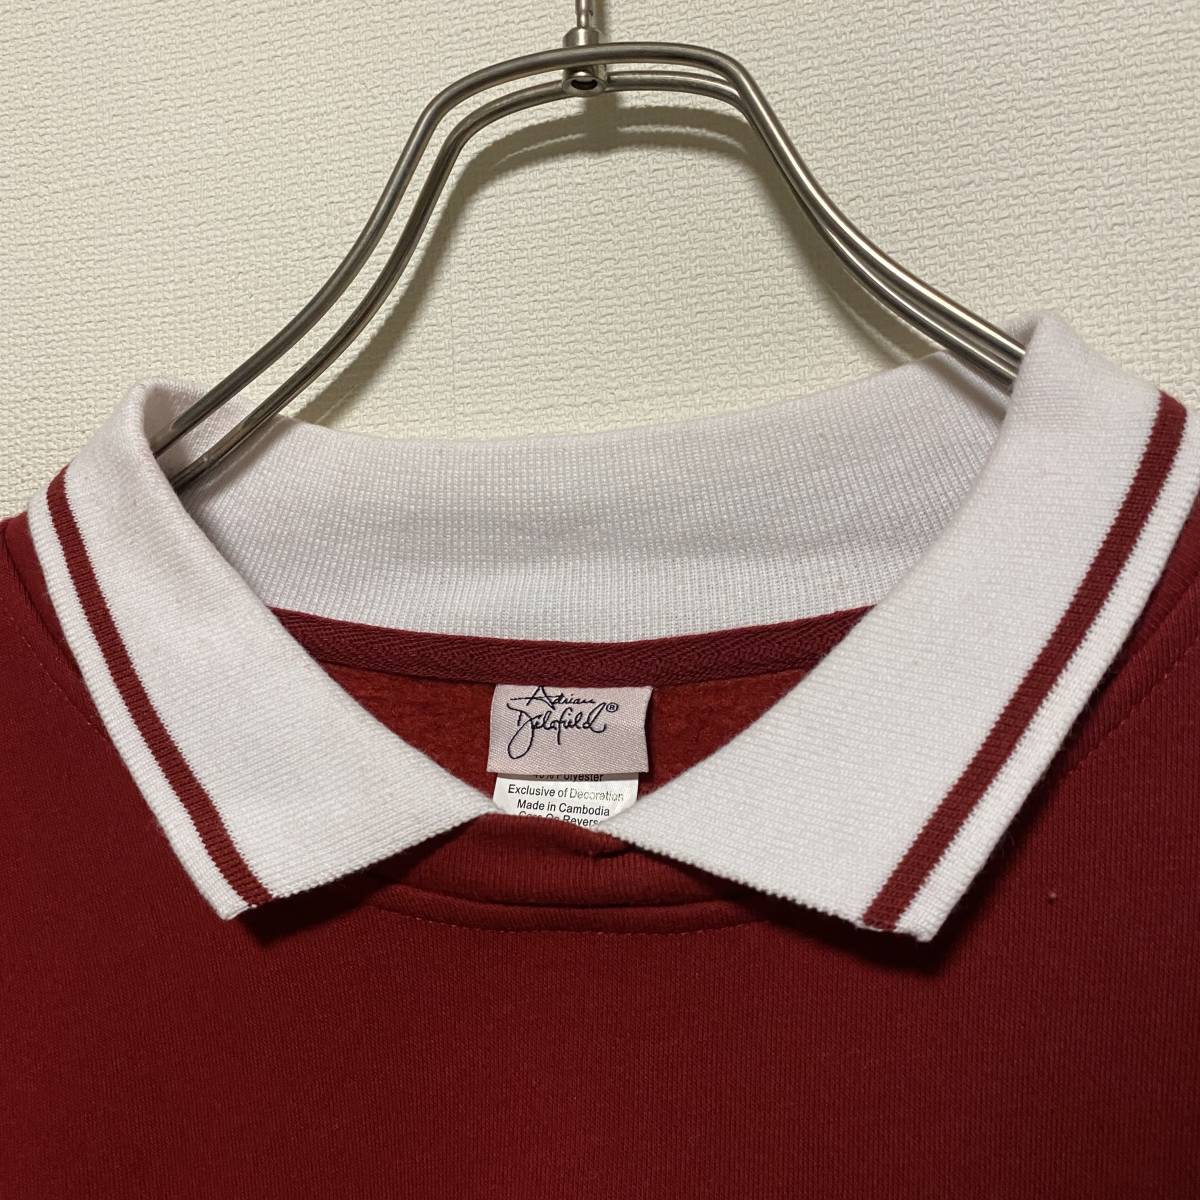  America б/у одежда футболка тренировочный обратная сторона ворсистый воротник имеется L размер вышивка цветочный принт Heart Vintage [R55]